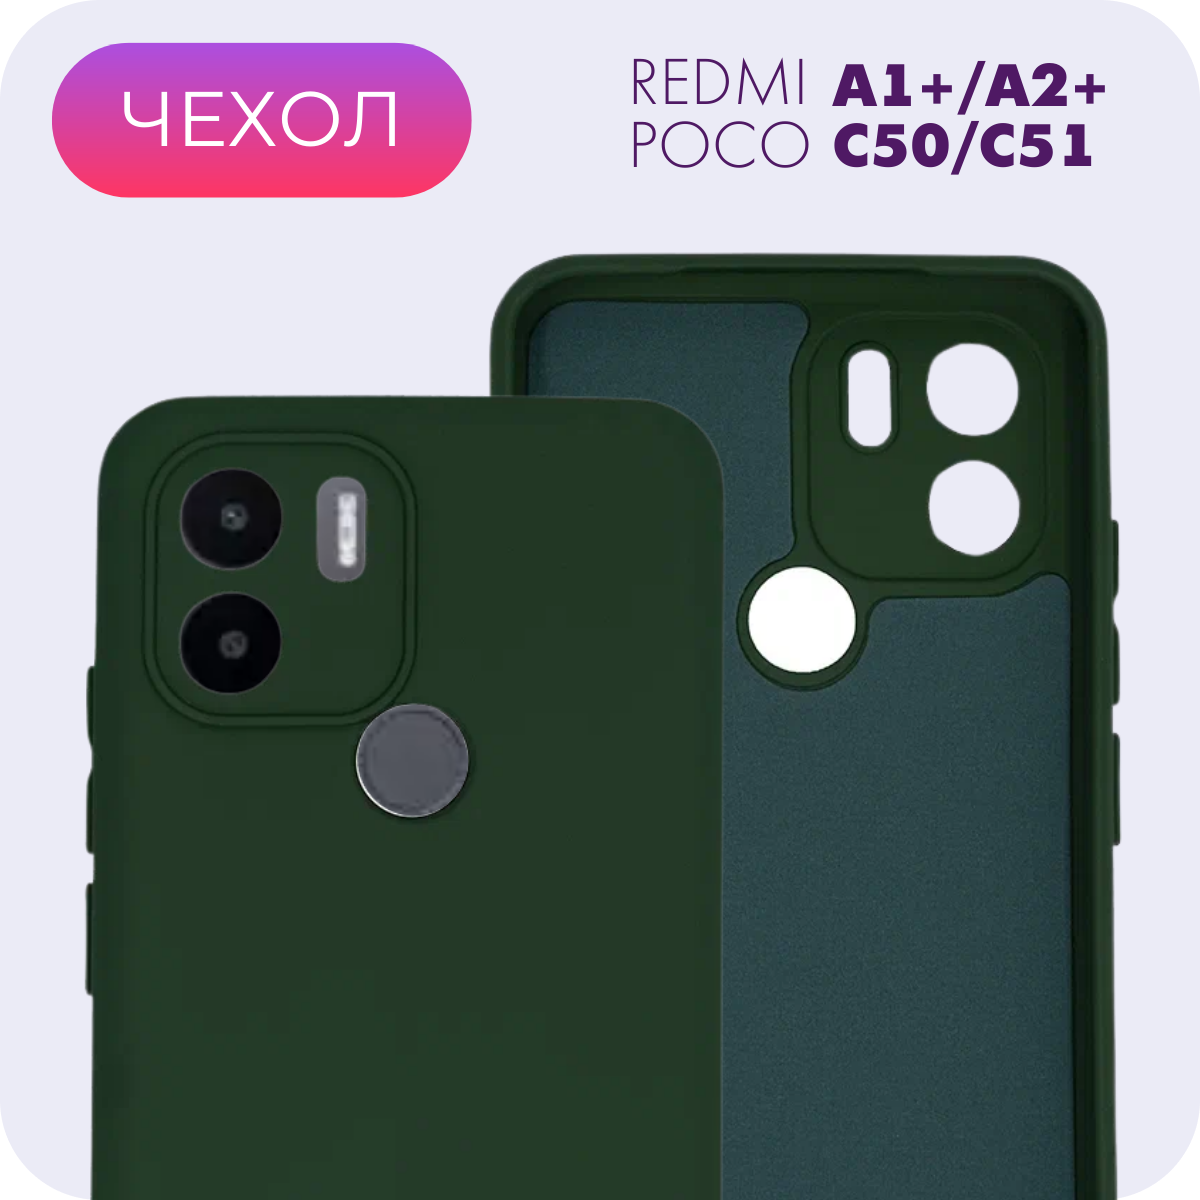 Противоударный матовый чехол с защитой камеры №29 Silicone Case для Xiaomi Redmi A1+/A2+/Poco C50/C51 (Ксиоми Редми А1+/А2+/Поко Ц50/Ц51)